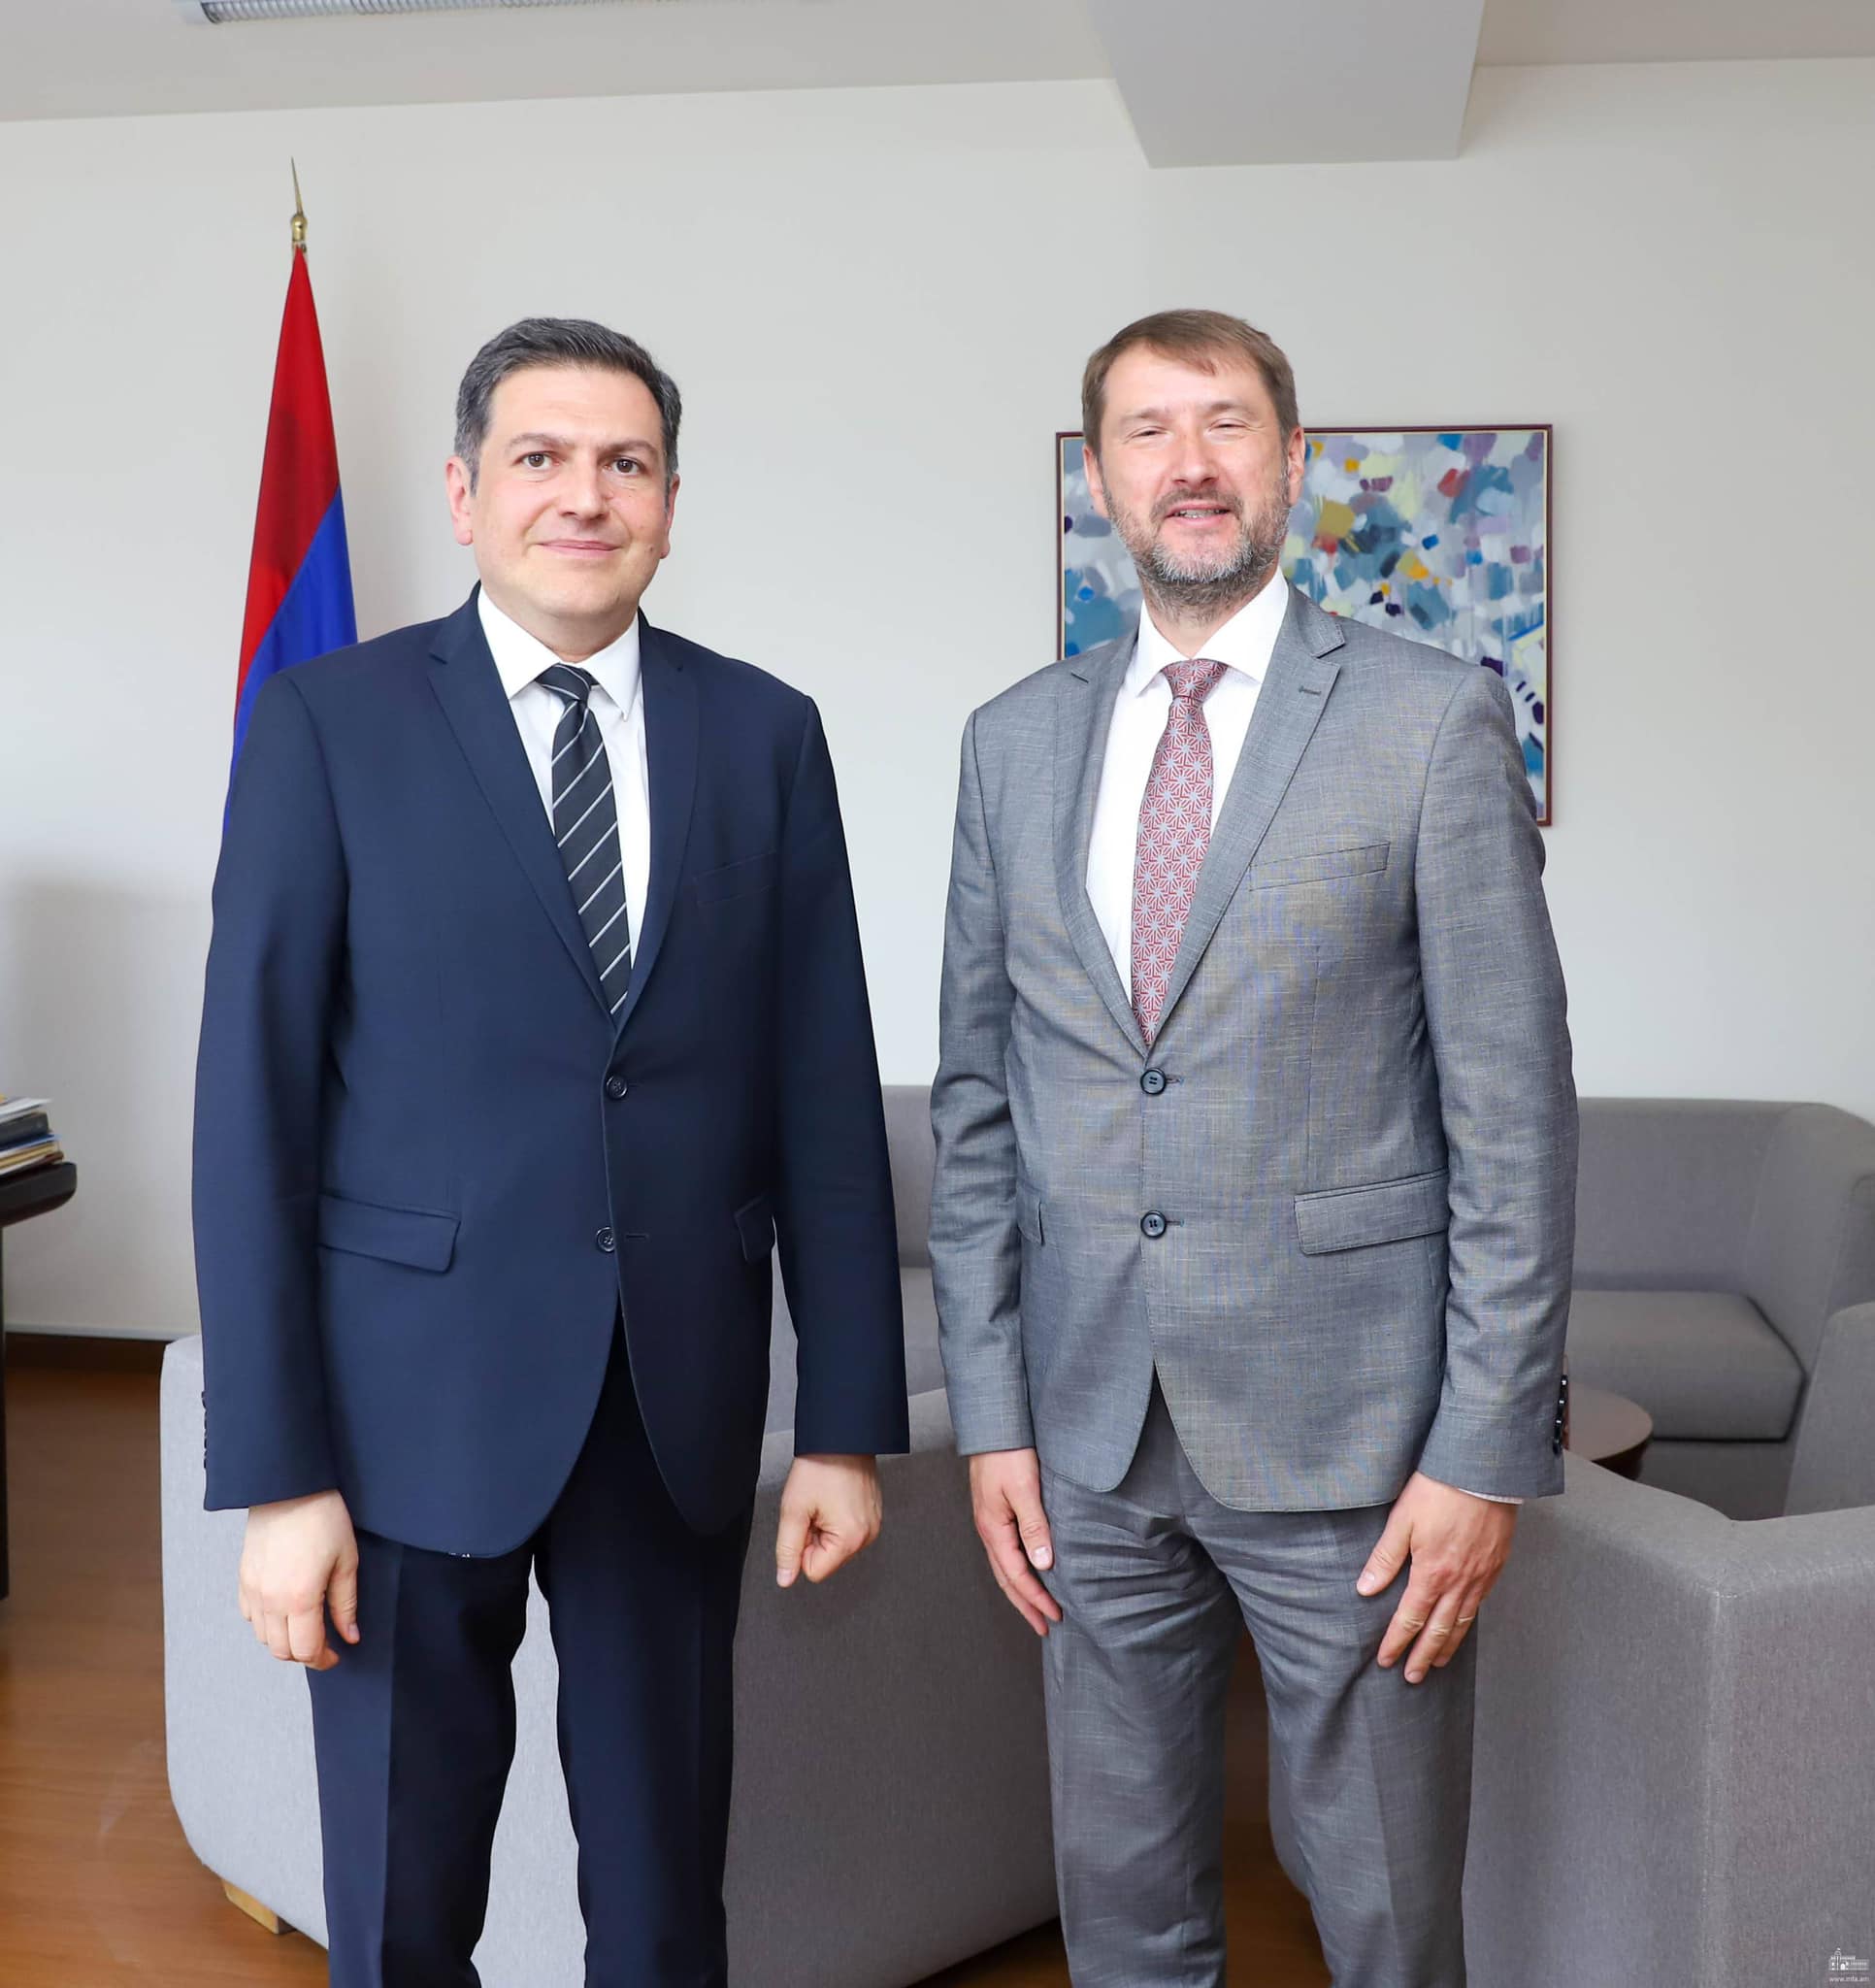 Երևանում տեղի ունեցան խորհրդակցություններ Հայաստանի և Լատվիայի ԱԳՆ-ների միջև